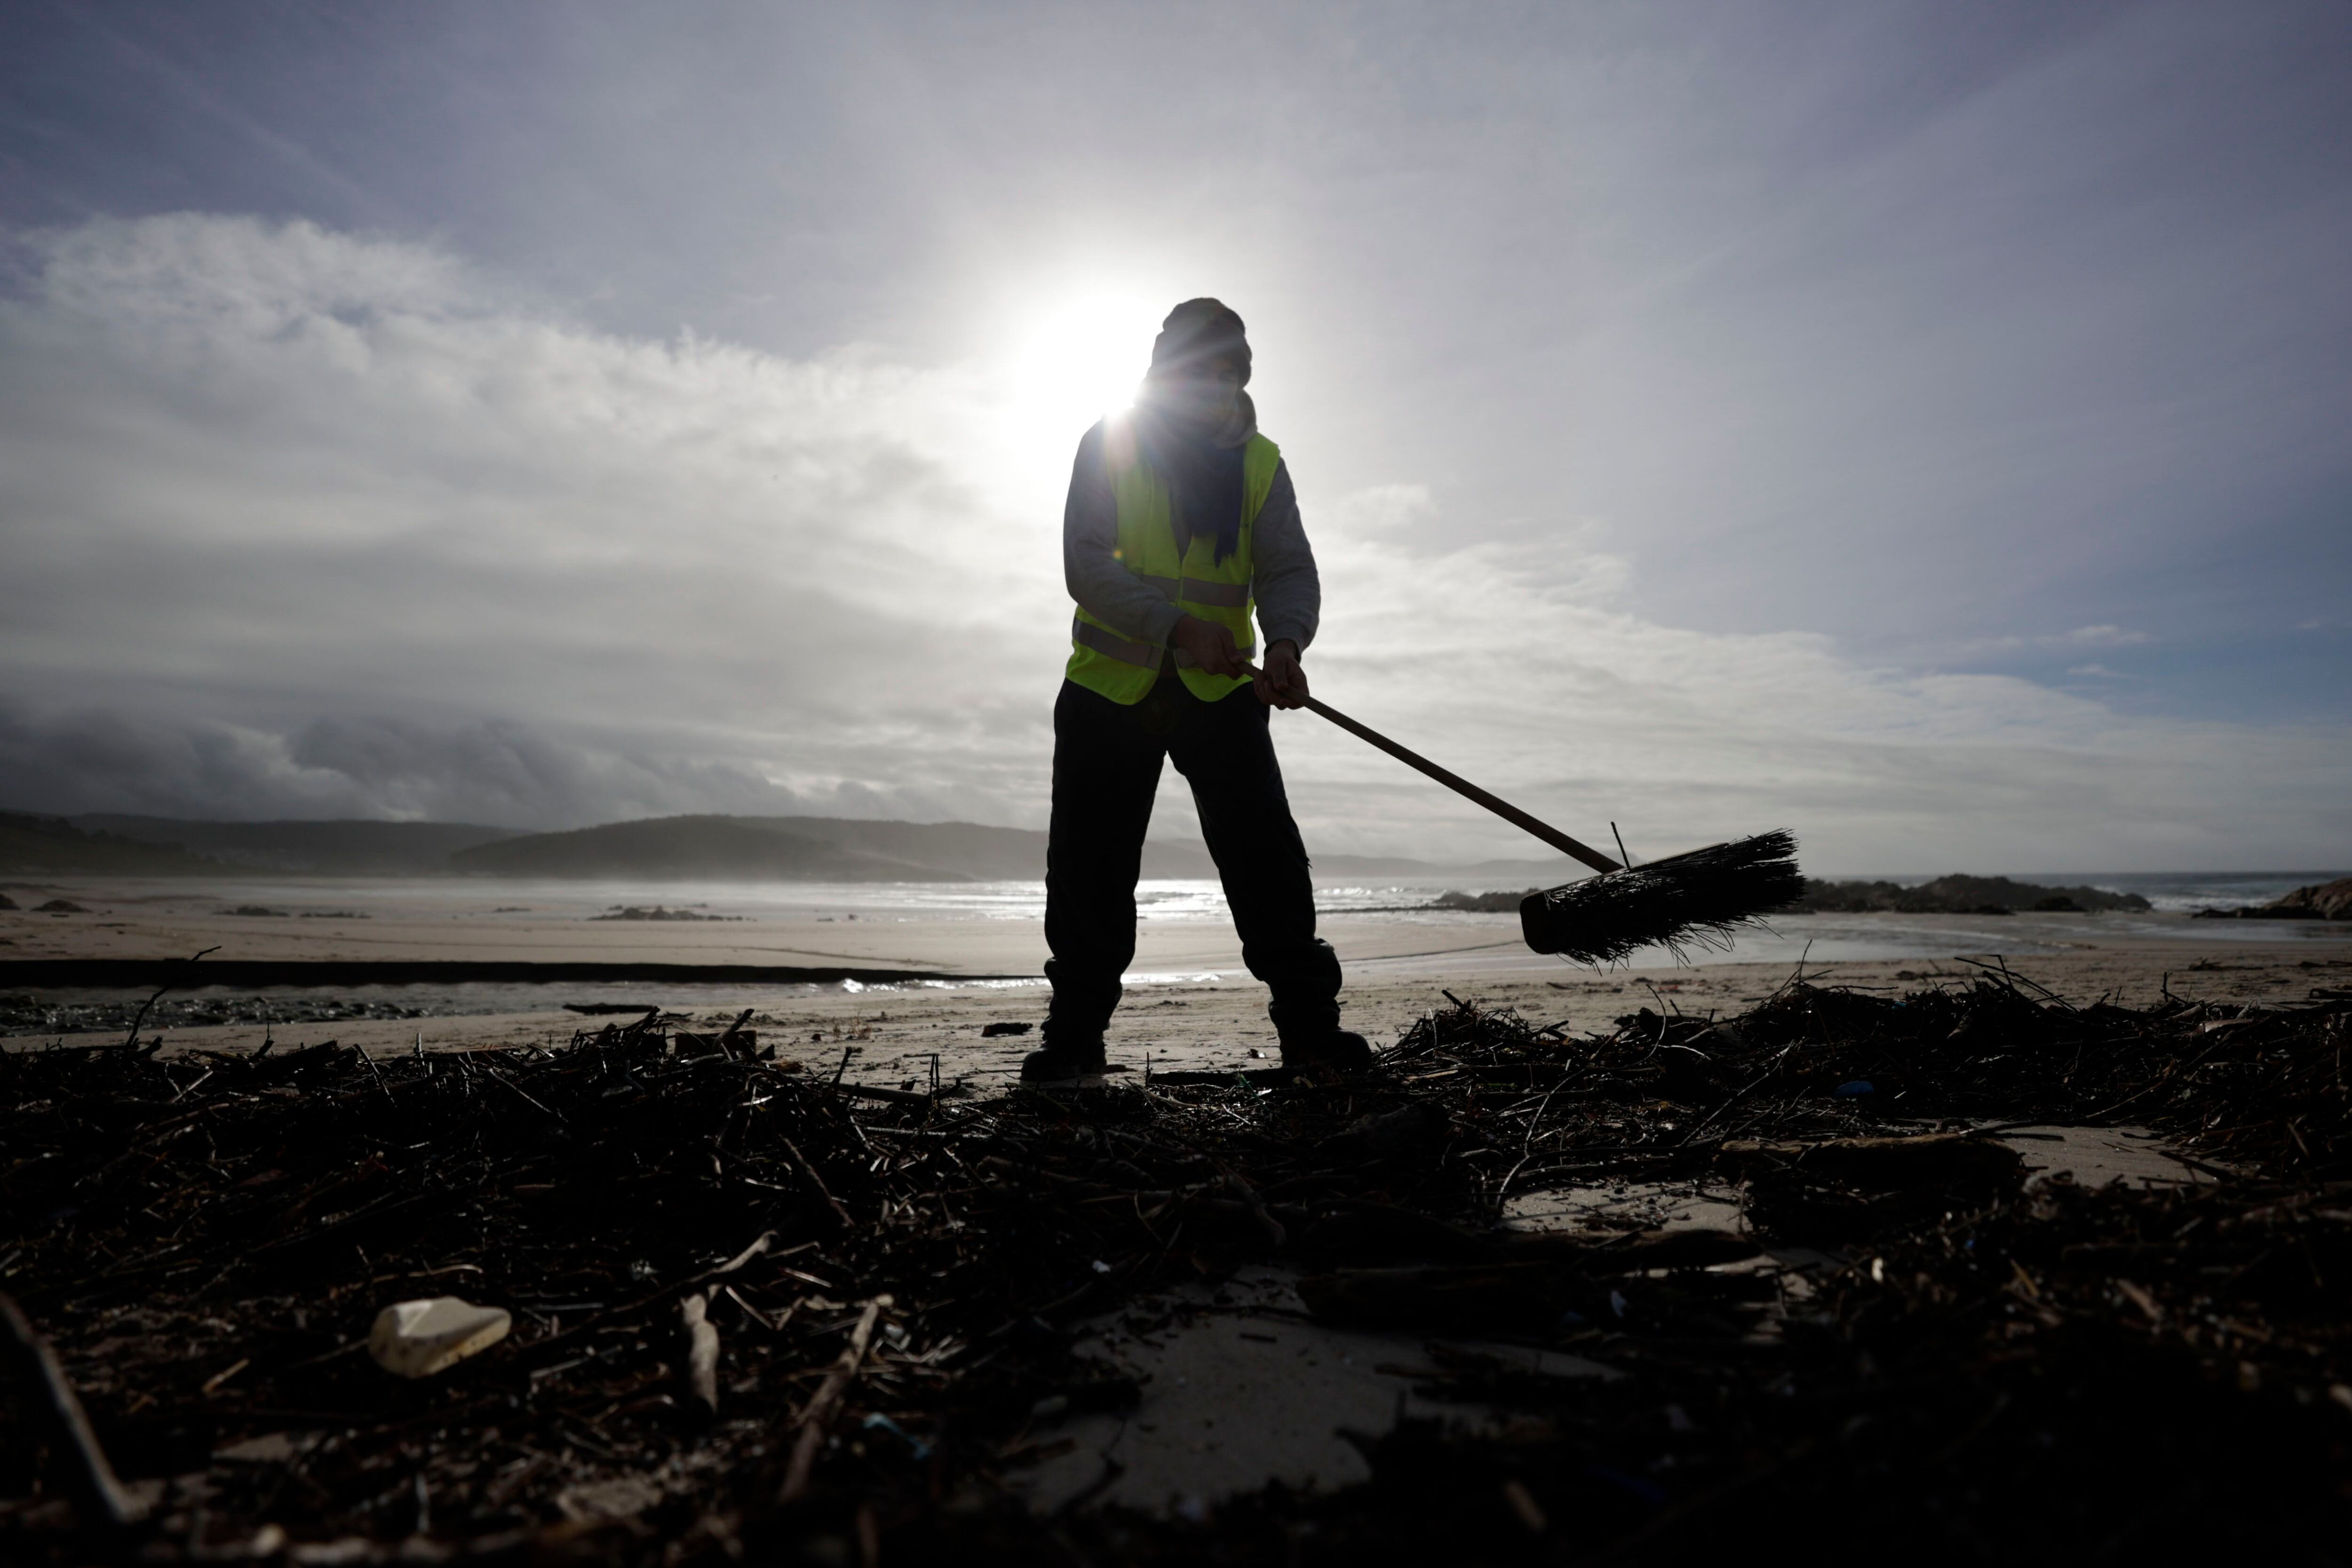 Un operario limpiaba la playa de Nemiña, en el concello coruñés de Muxía, donde continúan las labores de limpieza de zonas costeras afectadas por la contaminación de pellets de plástico después de que el mercante Toconao perdiera parte de su carga el pasado diciembre. EFE/Cabalar